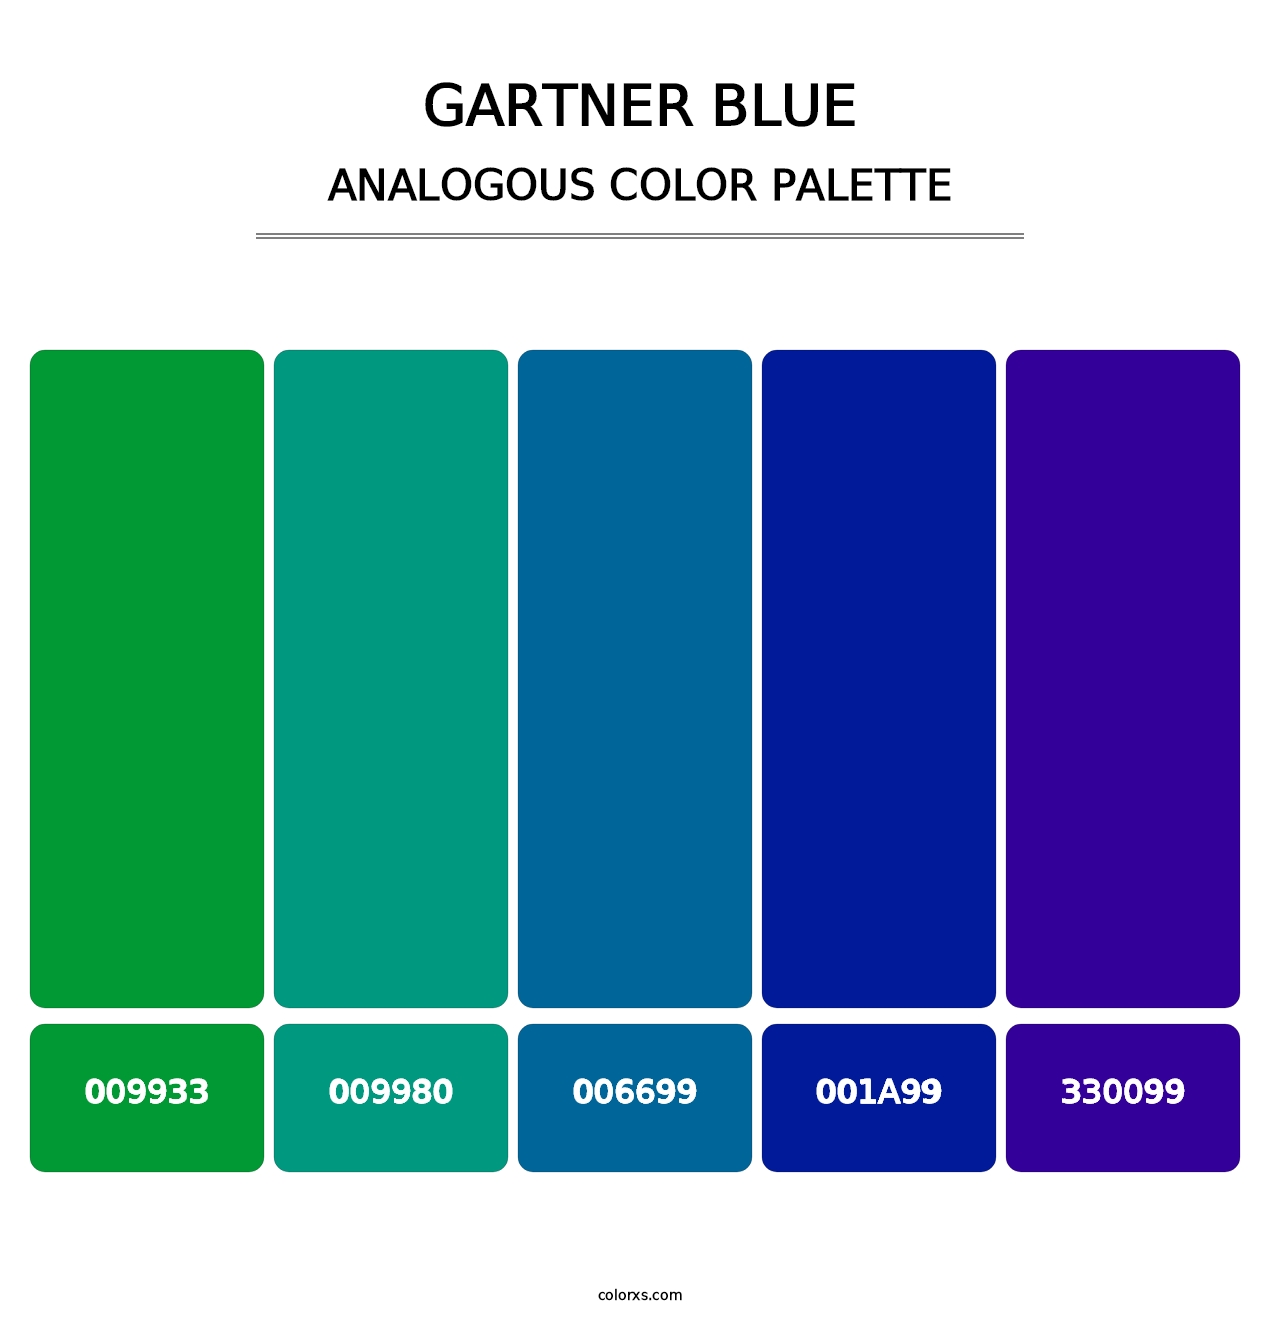 Gartner Blue - Analogous Color Palette